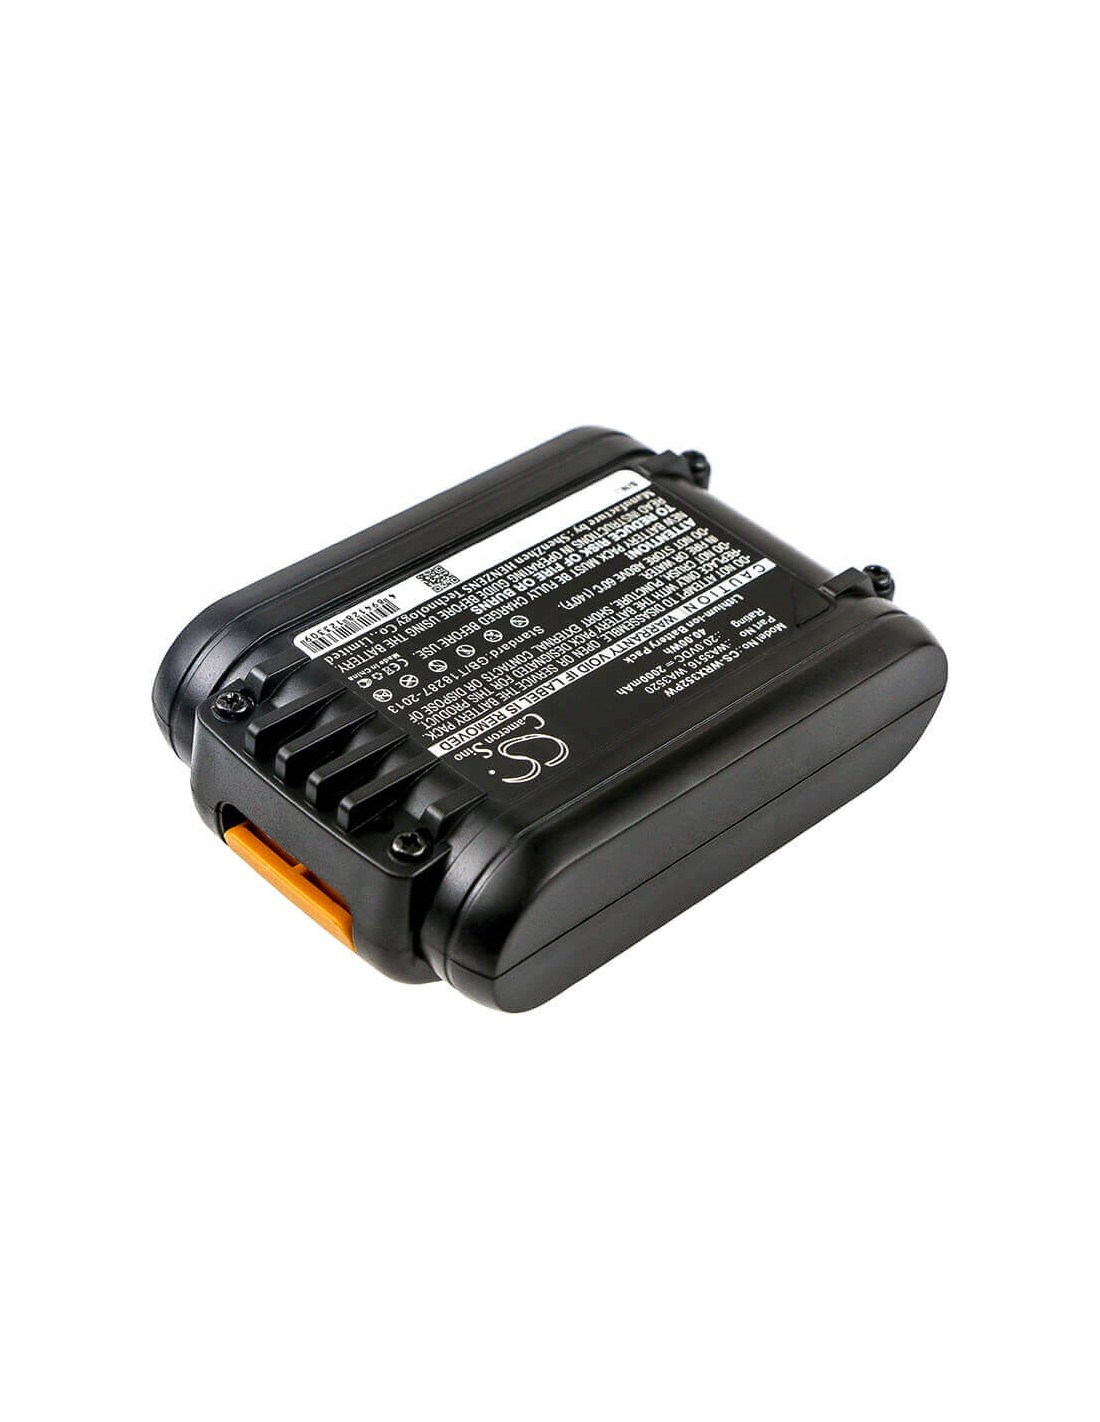 Battery for Worx, Wg154e, Wg160e, Wg160e.5, Wg169e 20V, 2000mAh - 40.00Wh